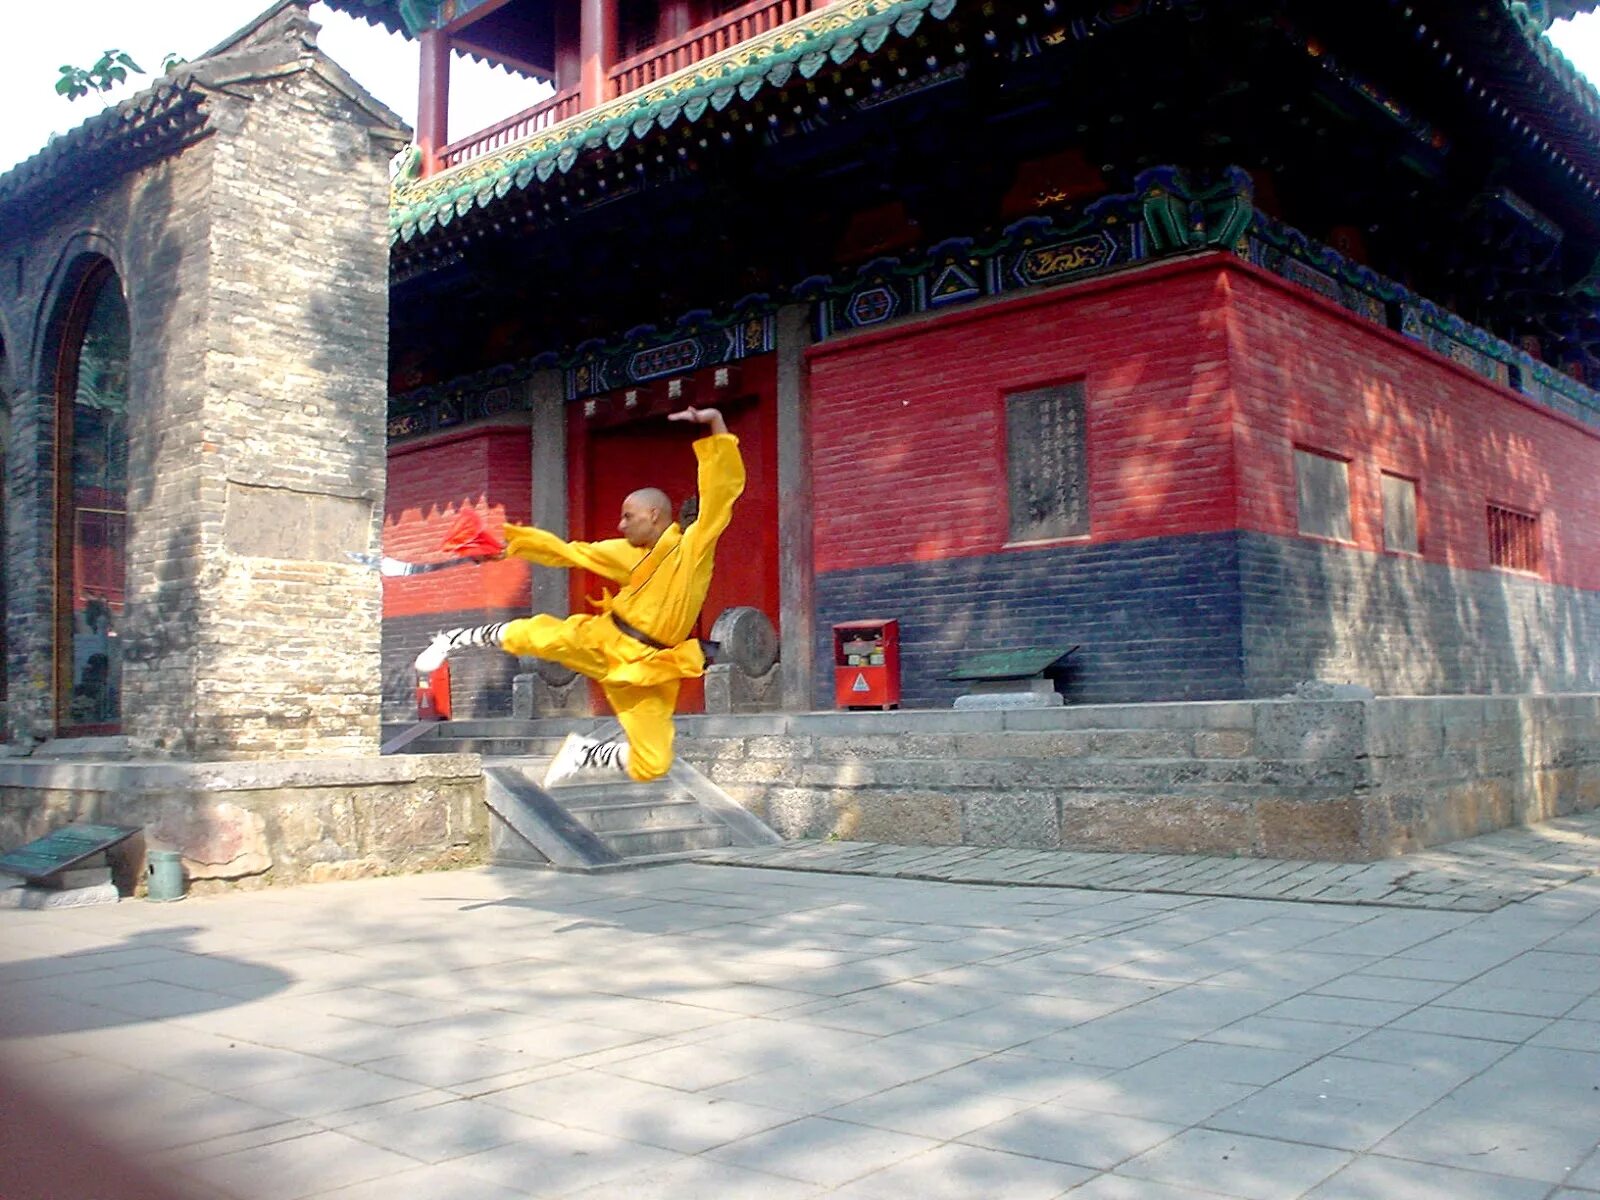 Shaolin temple. Храм Шаолинь. Монах Шаолинь. Монастырь Шаолинь внутри. Храм Шаолинь благовонья.